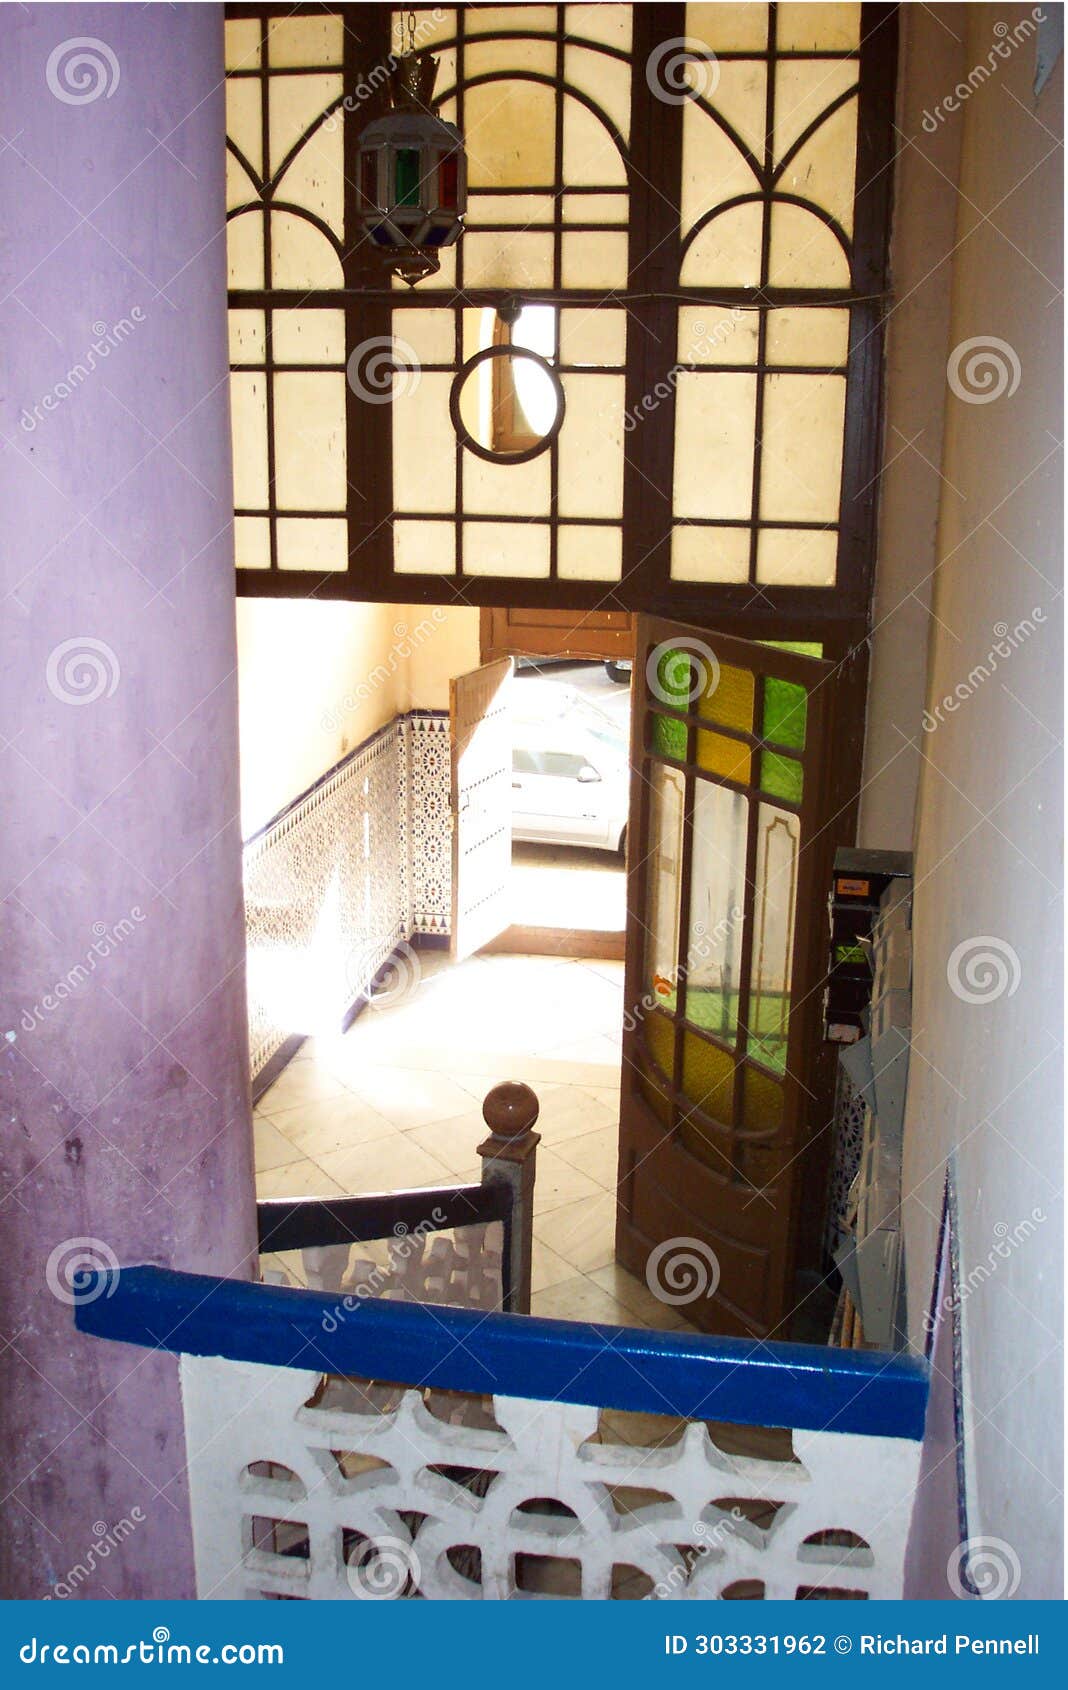 entrance way decoration of casa de cristales building, melilla spain showing art nouveau decoration mixed with moroccan motifs